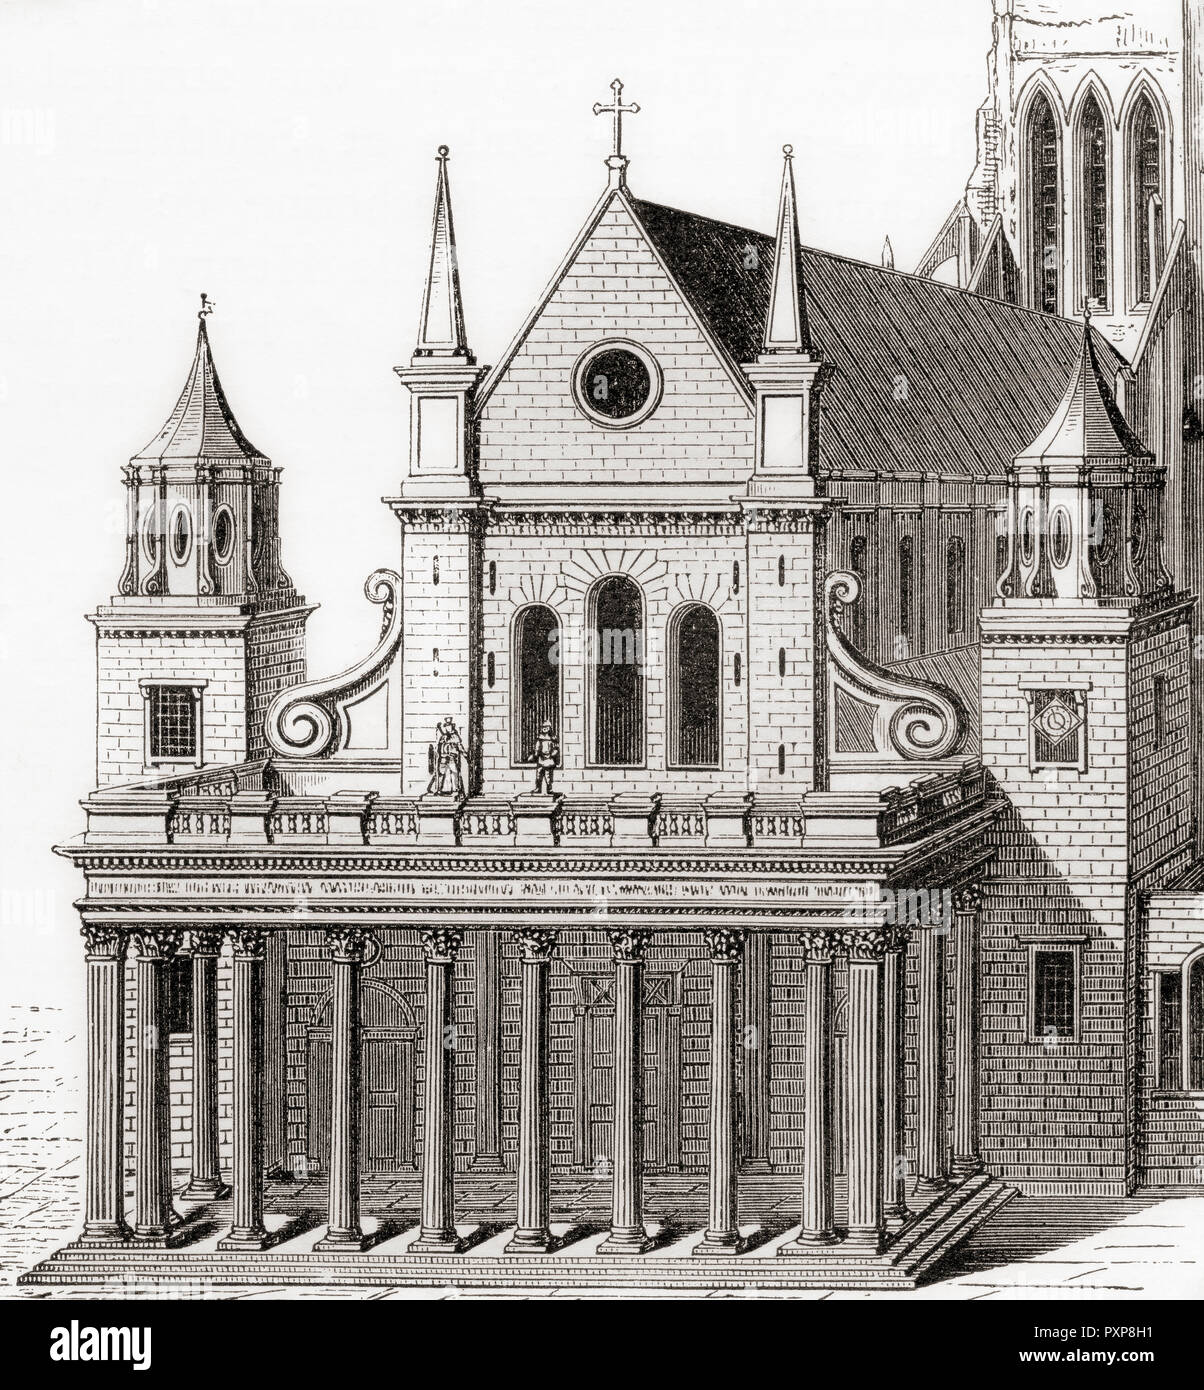 Inigo Jones' Portal zu alten St. Pauls Kathedrale, die die Lollarden Tower, London, England. Von London Bilder, veröffentlicht 1890. Stockfoto